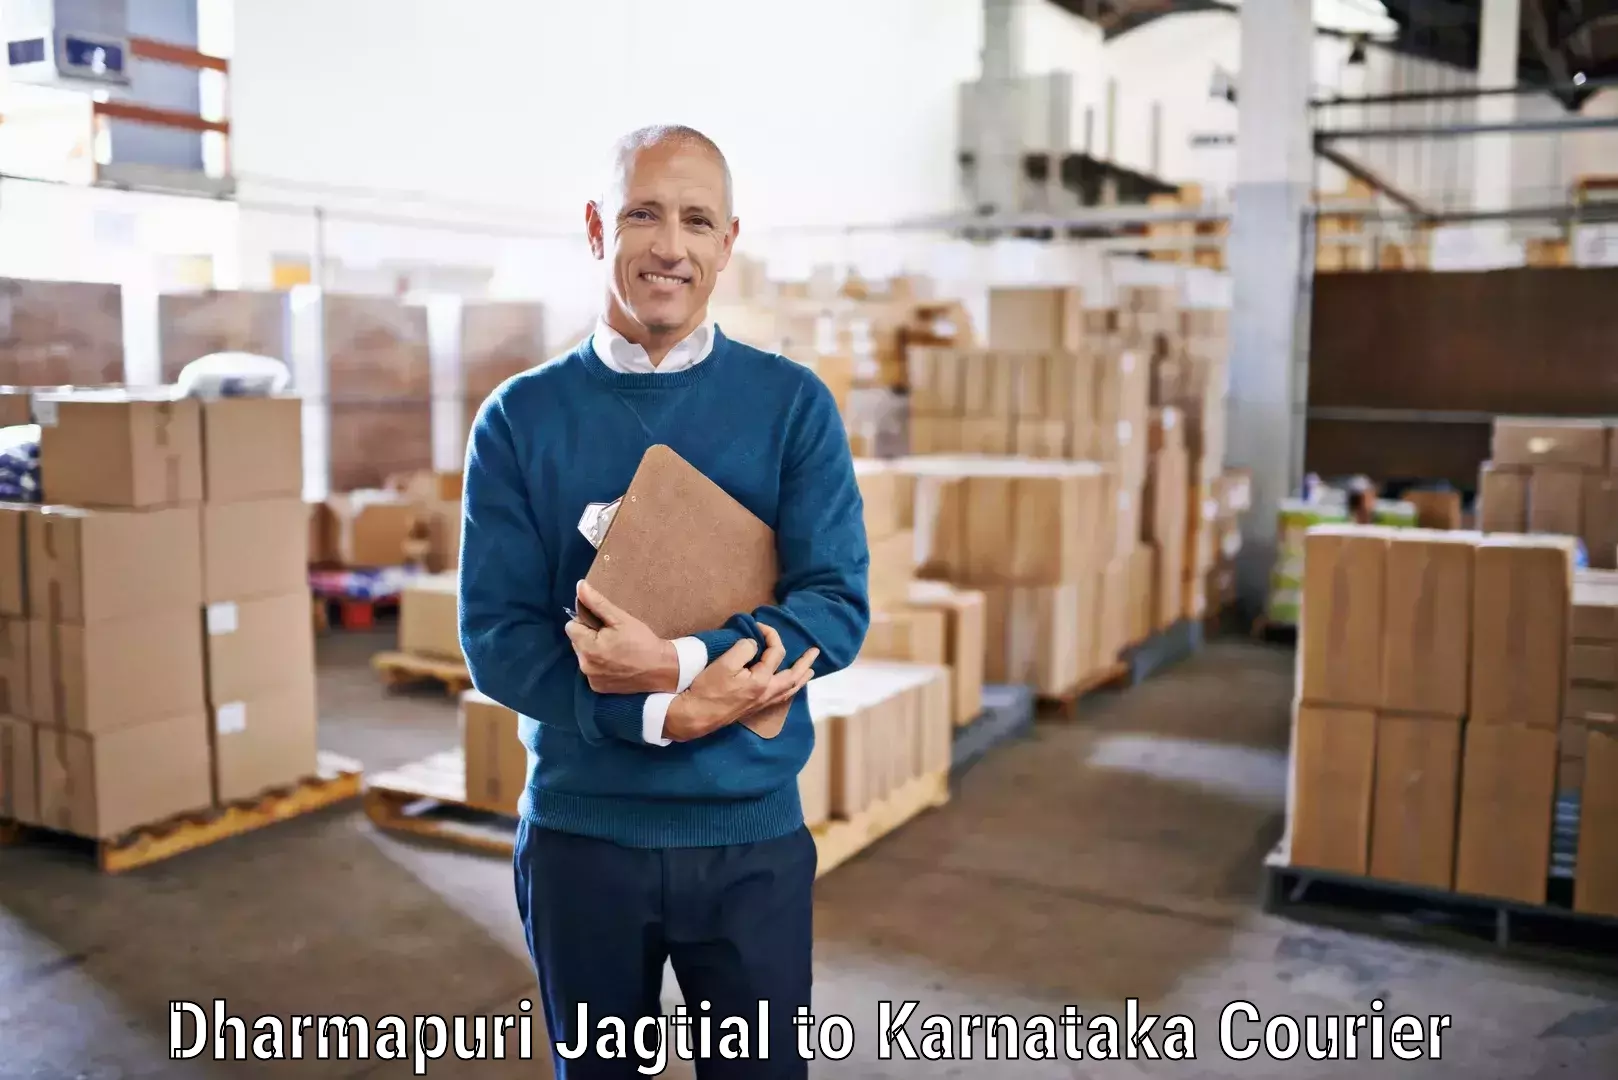 On-demand courier Dharmapuri Jagtial to Kotturu